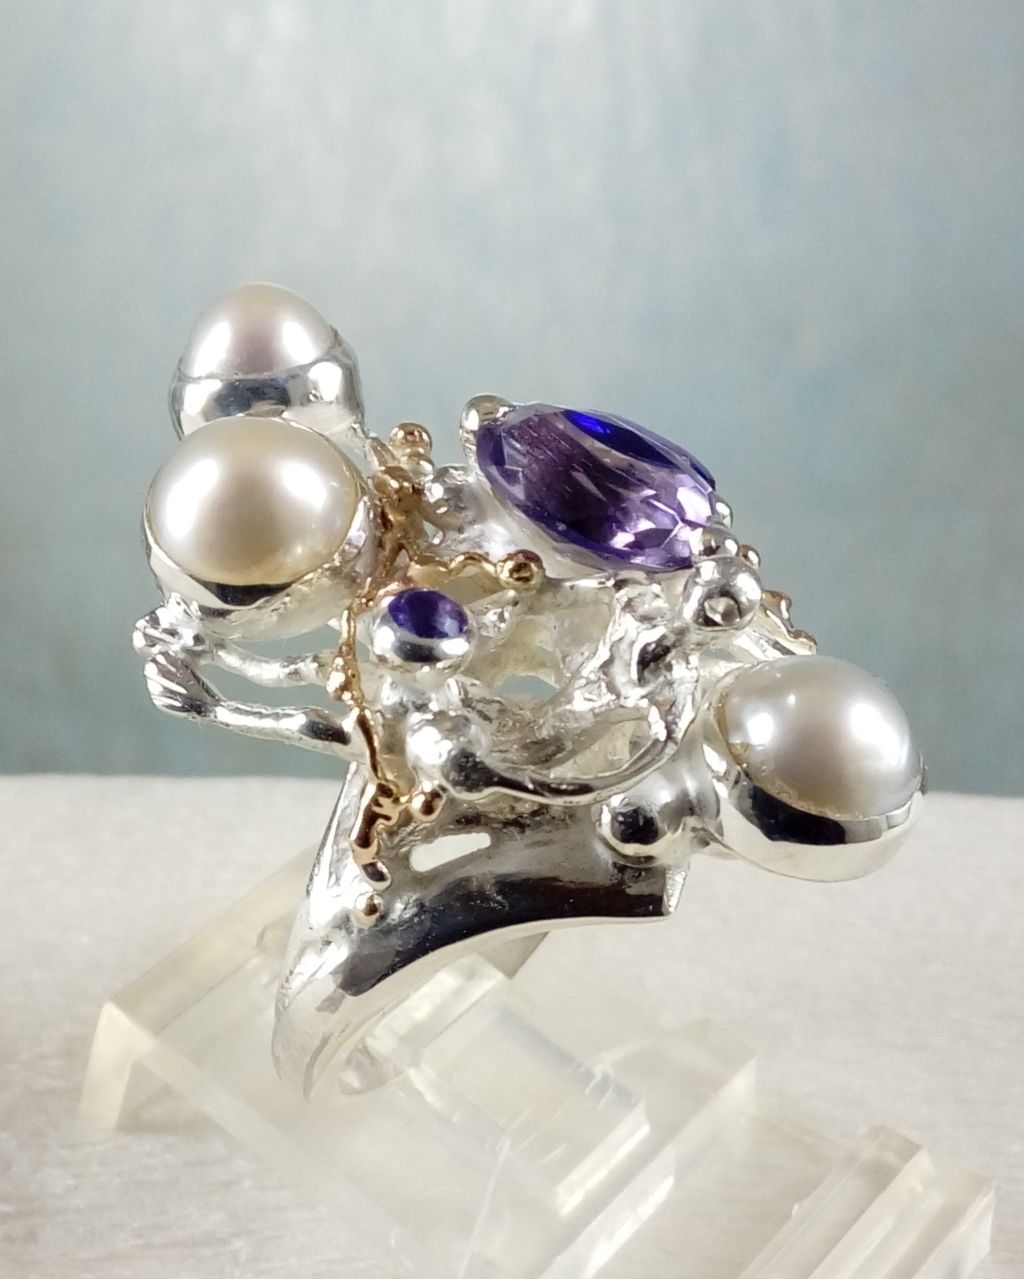 gregory pyra piro skulpturell ring 8070, smycken som säljs på konstgallerier, smycken som säljs på hantverksgallerier, handgjorda ametistsmycken, handgjorda pärlsmycken, smycken som ingen annan har, skulpturala smycken, handgjorda ring med ametist och pärla